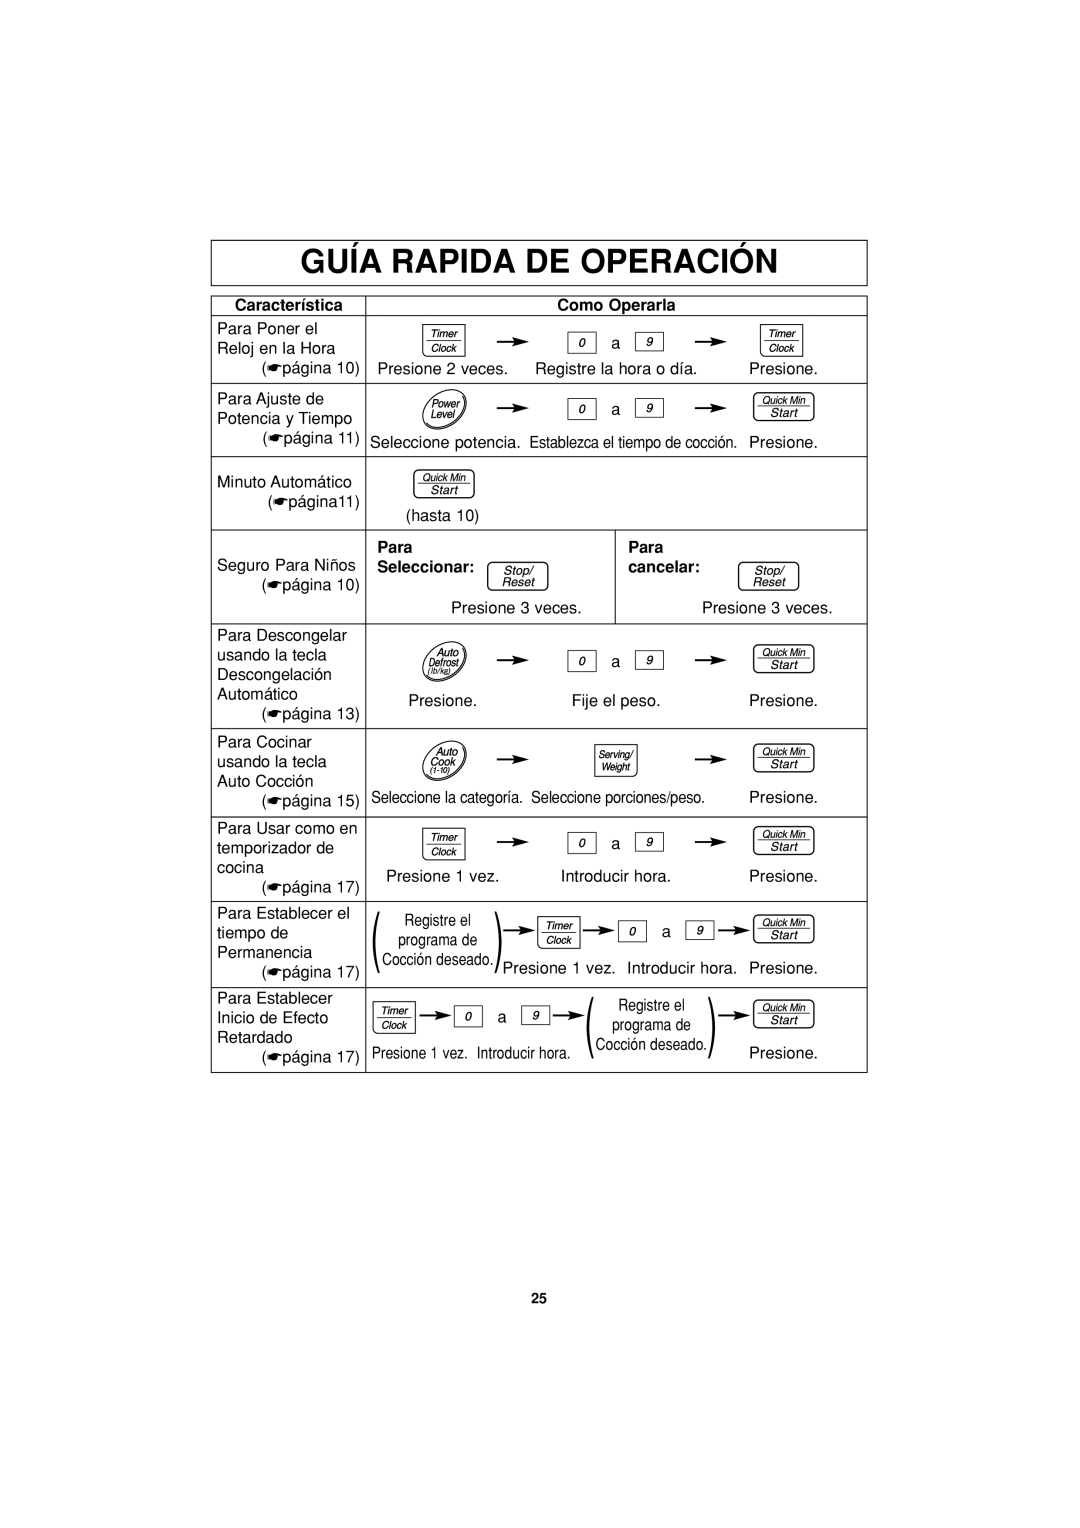 Panasonic NN-S334 Guía Rapida De Operación, Característica, Como Operarla, Para, Seleccionar, cancelar 